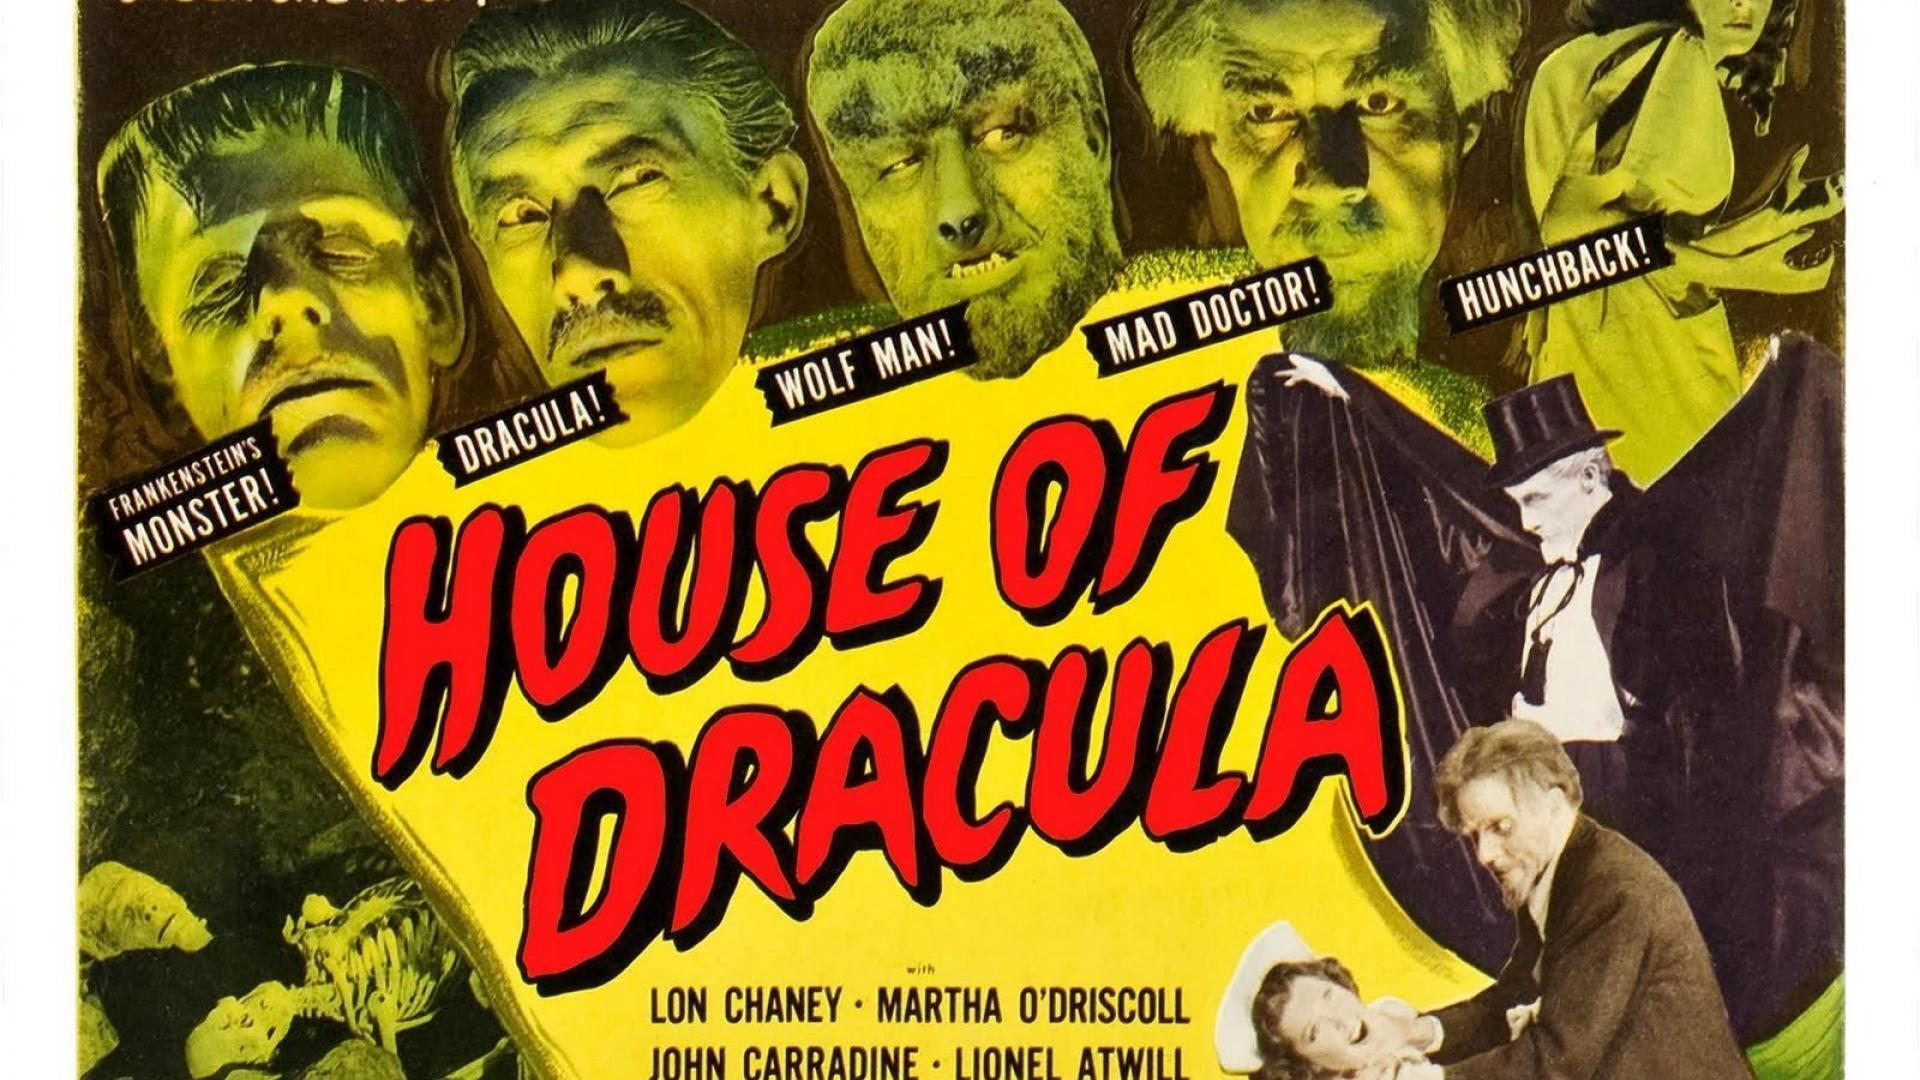 Horror vintage dracula movie posters wallpaper